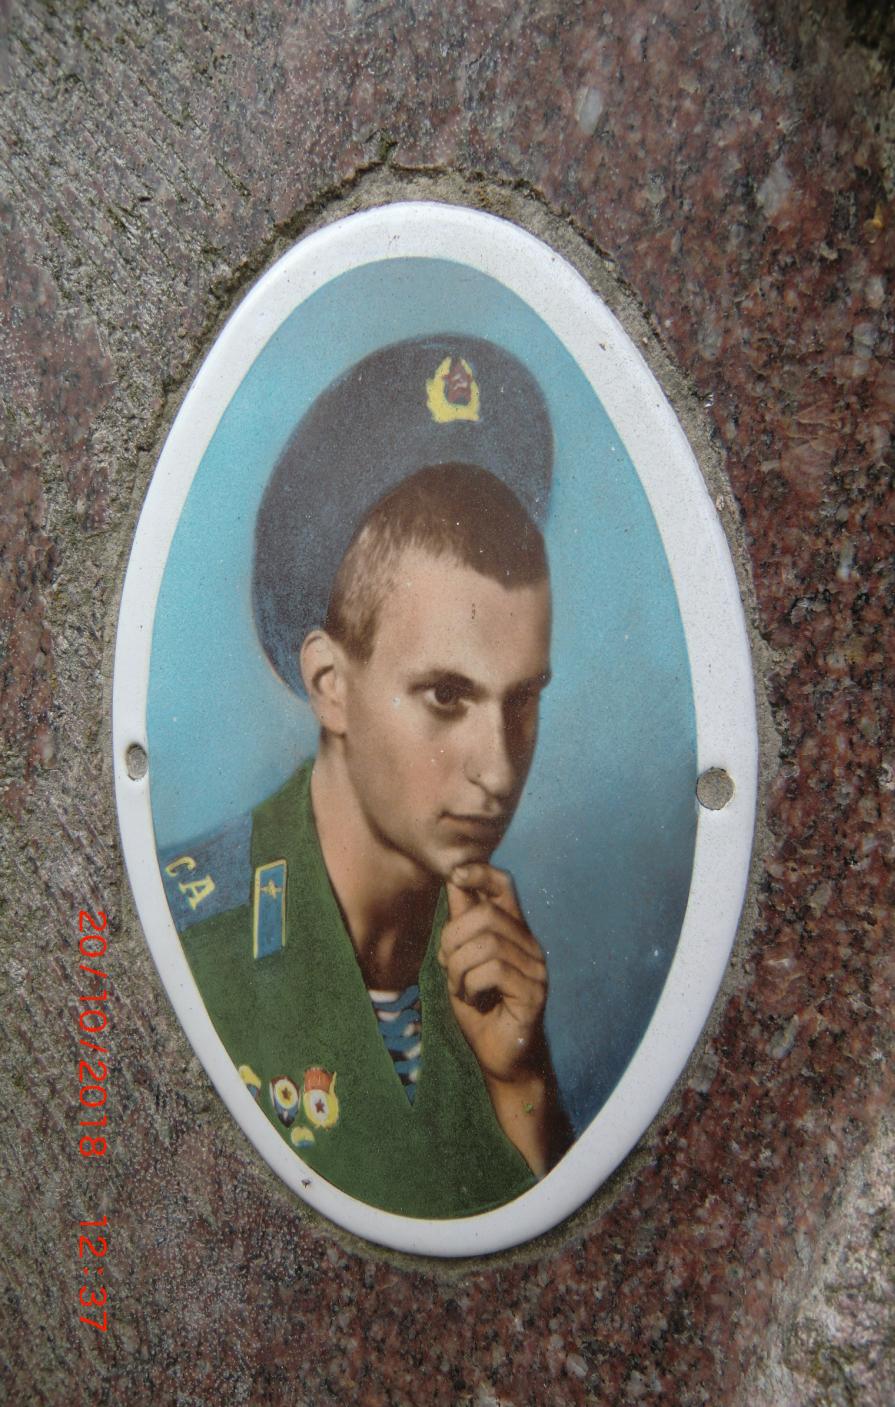 Кузнецов Сергей Николаевич, боец 345 гв.опдп,
                      погиб в Афгане в 1982 году.